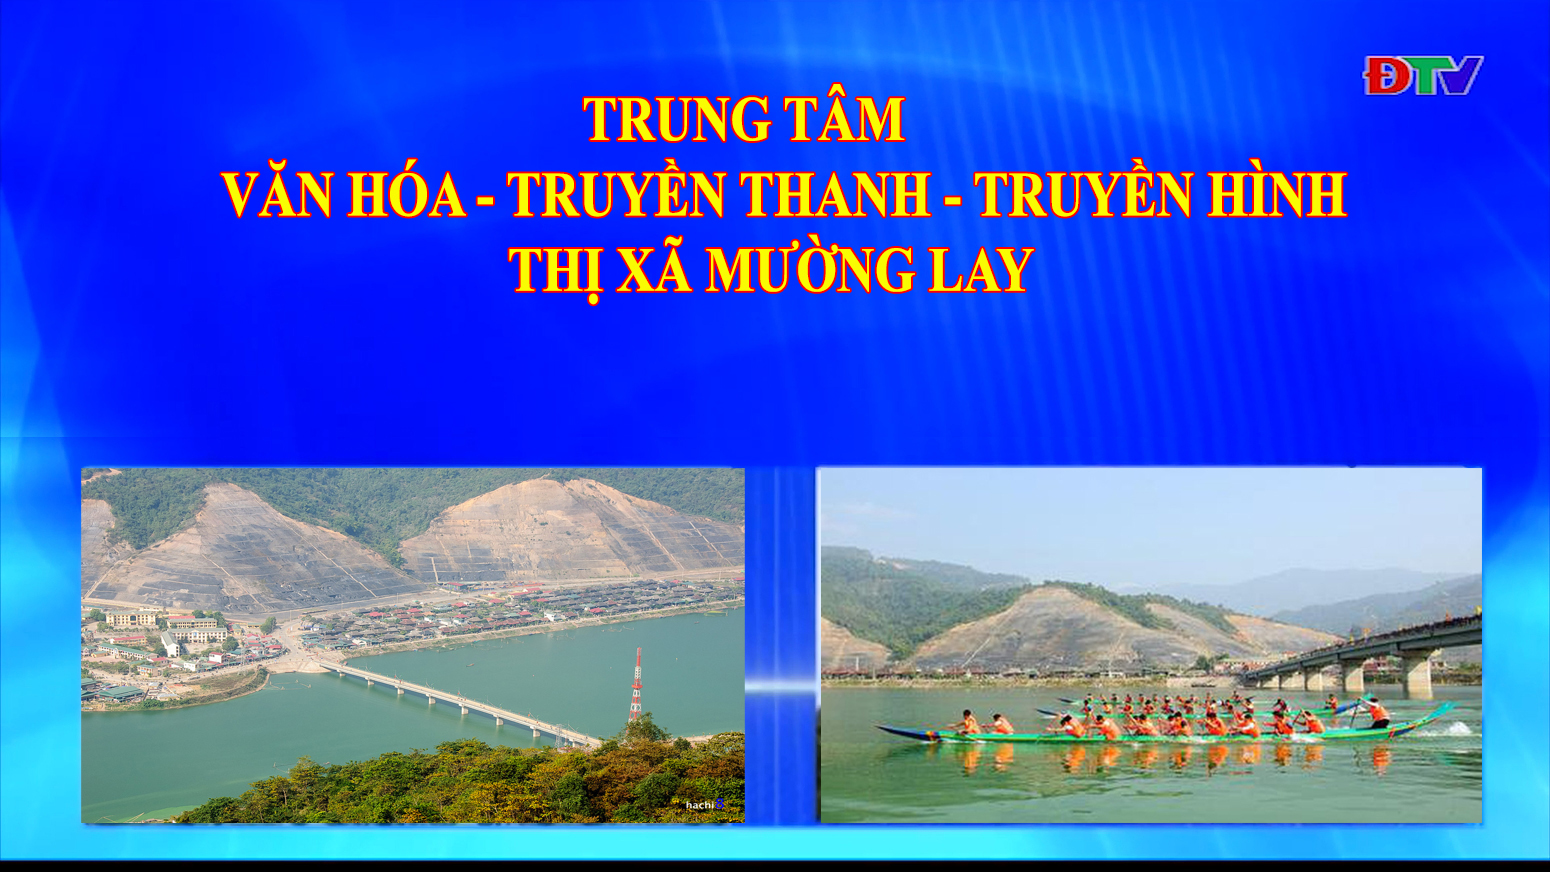 Trung tâm VH-TTTH thị xã Mường Lay (Ngày 22-7-2022)